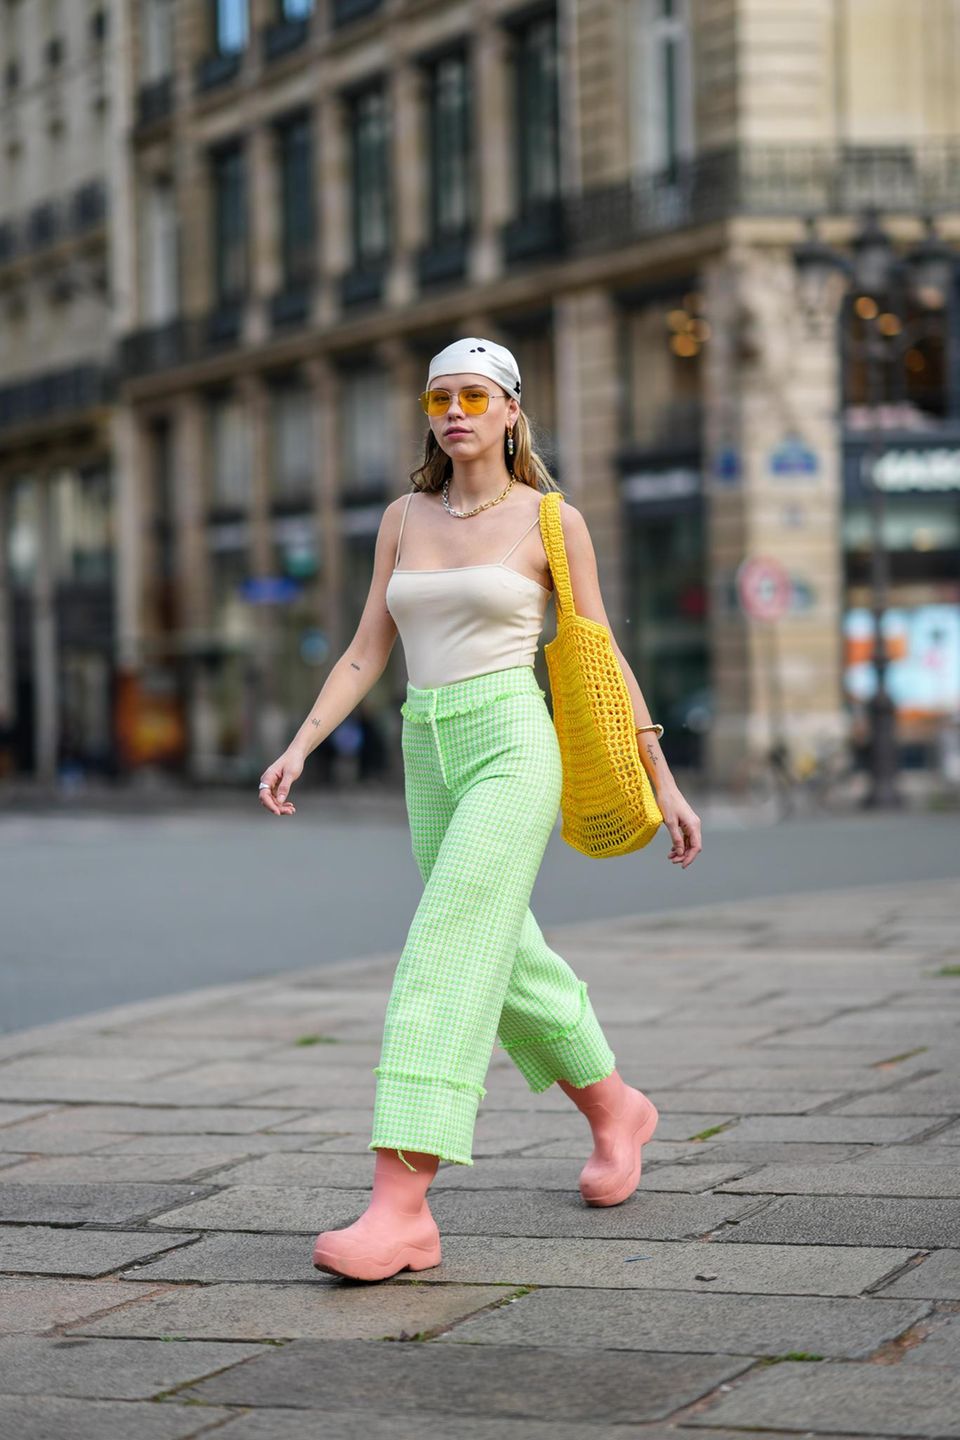 Frau mit grün-karierter weiter Hose und großer Sonnenbrille